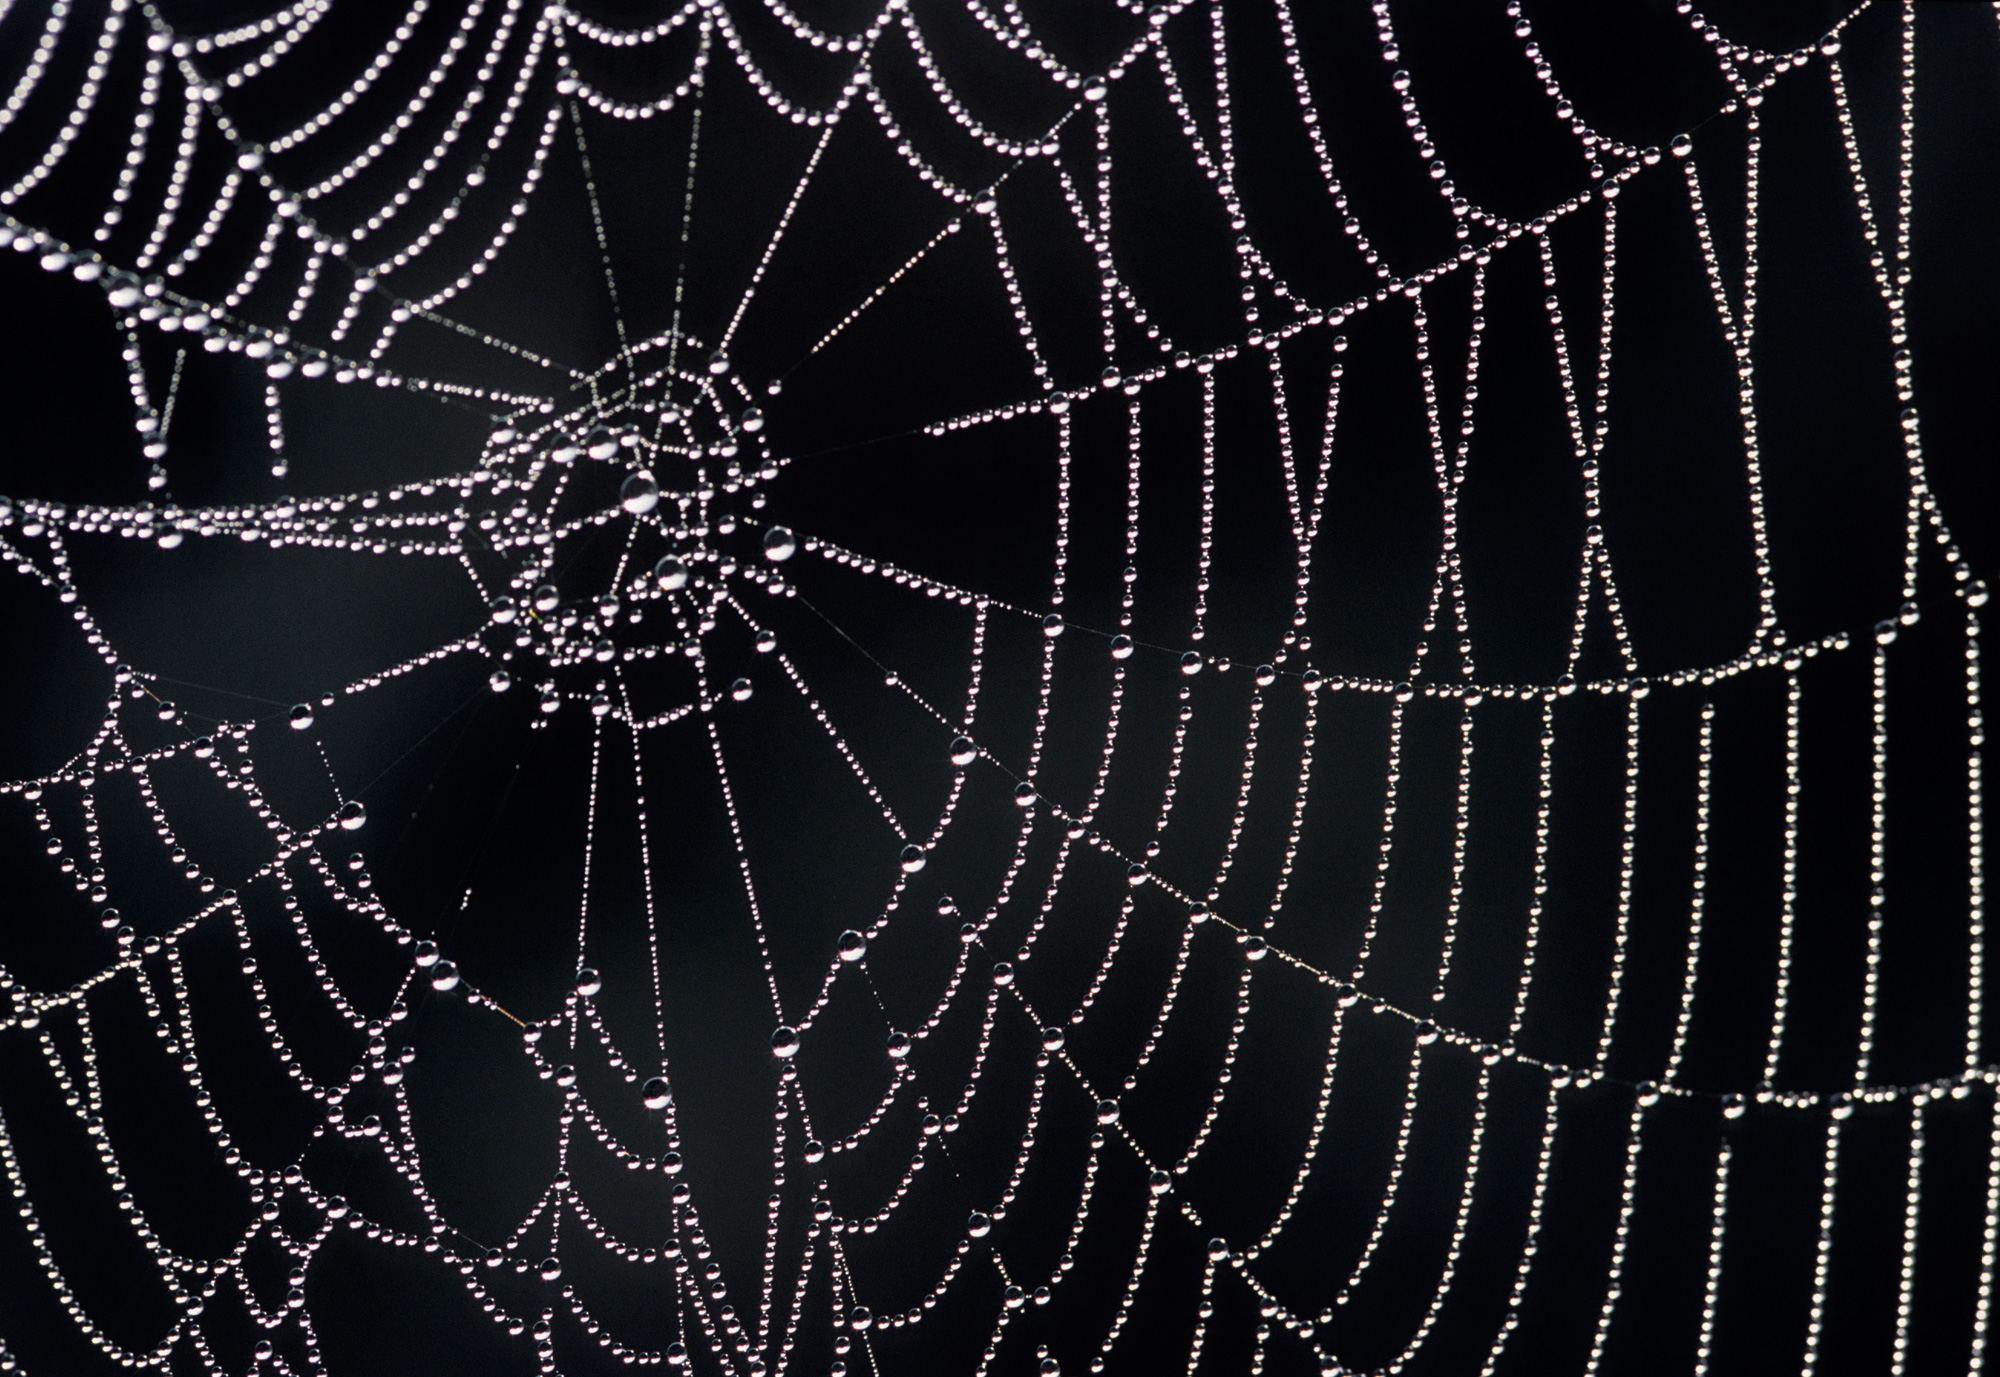 Spider web photo